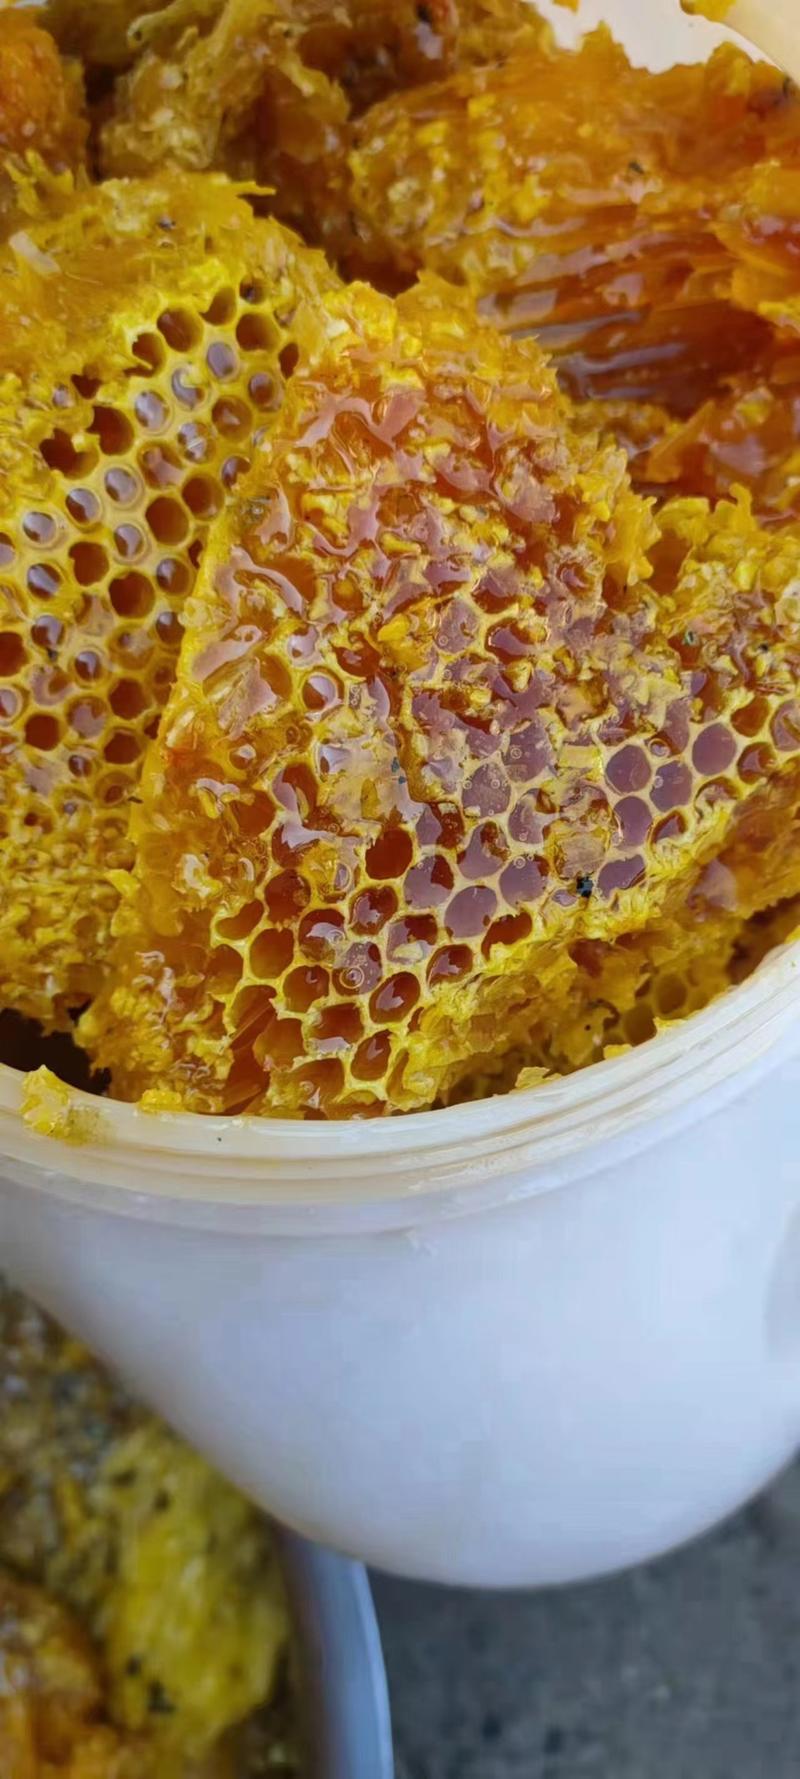 野生悬崖蜂蜜喜马拉雅大排蜂无法人工养殖